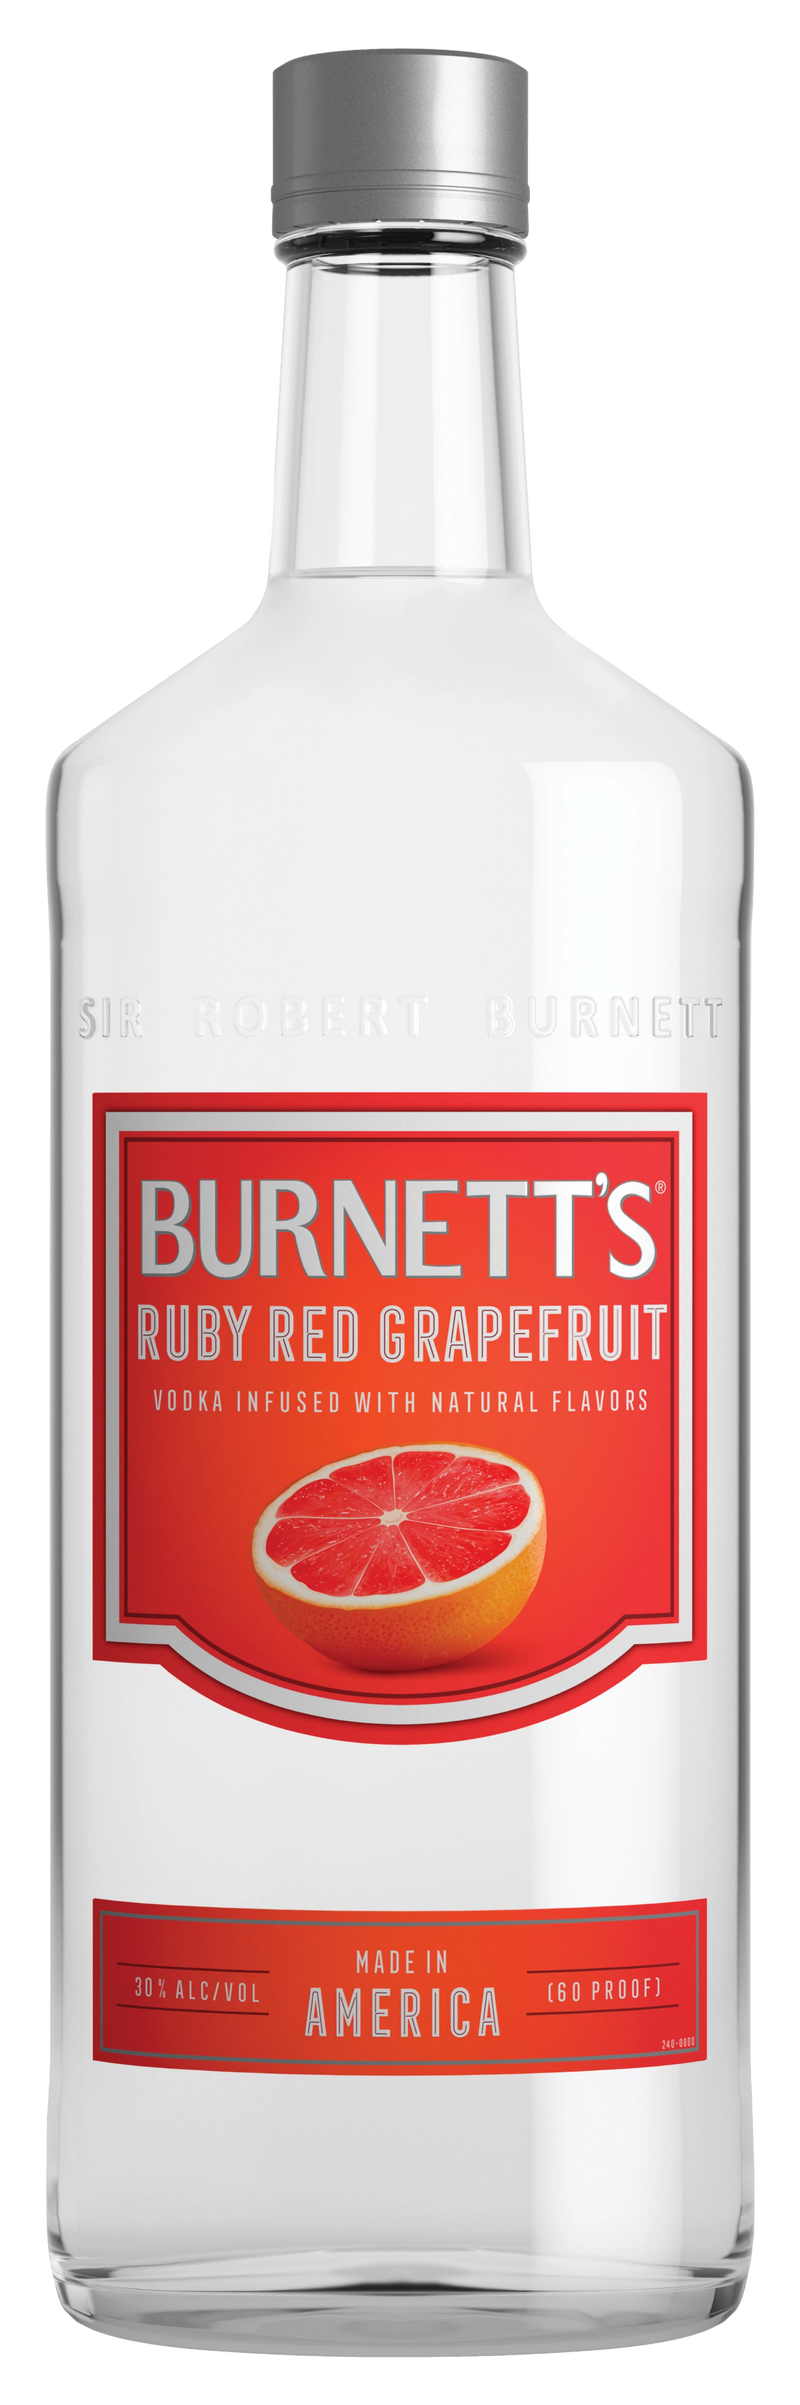 BURNETT'S RUBY RED GRAPEFRUIT